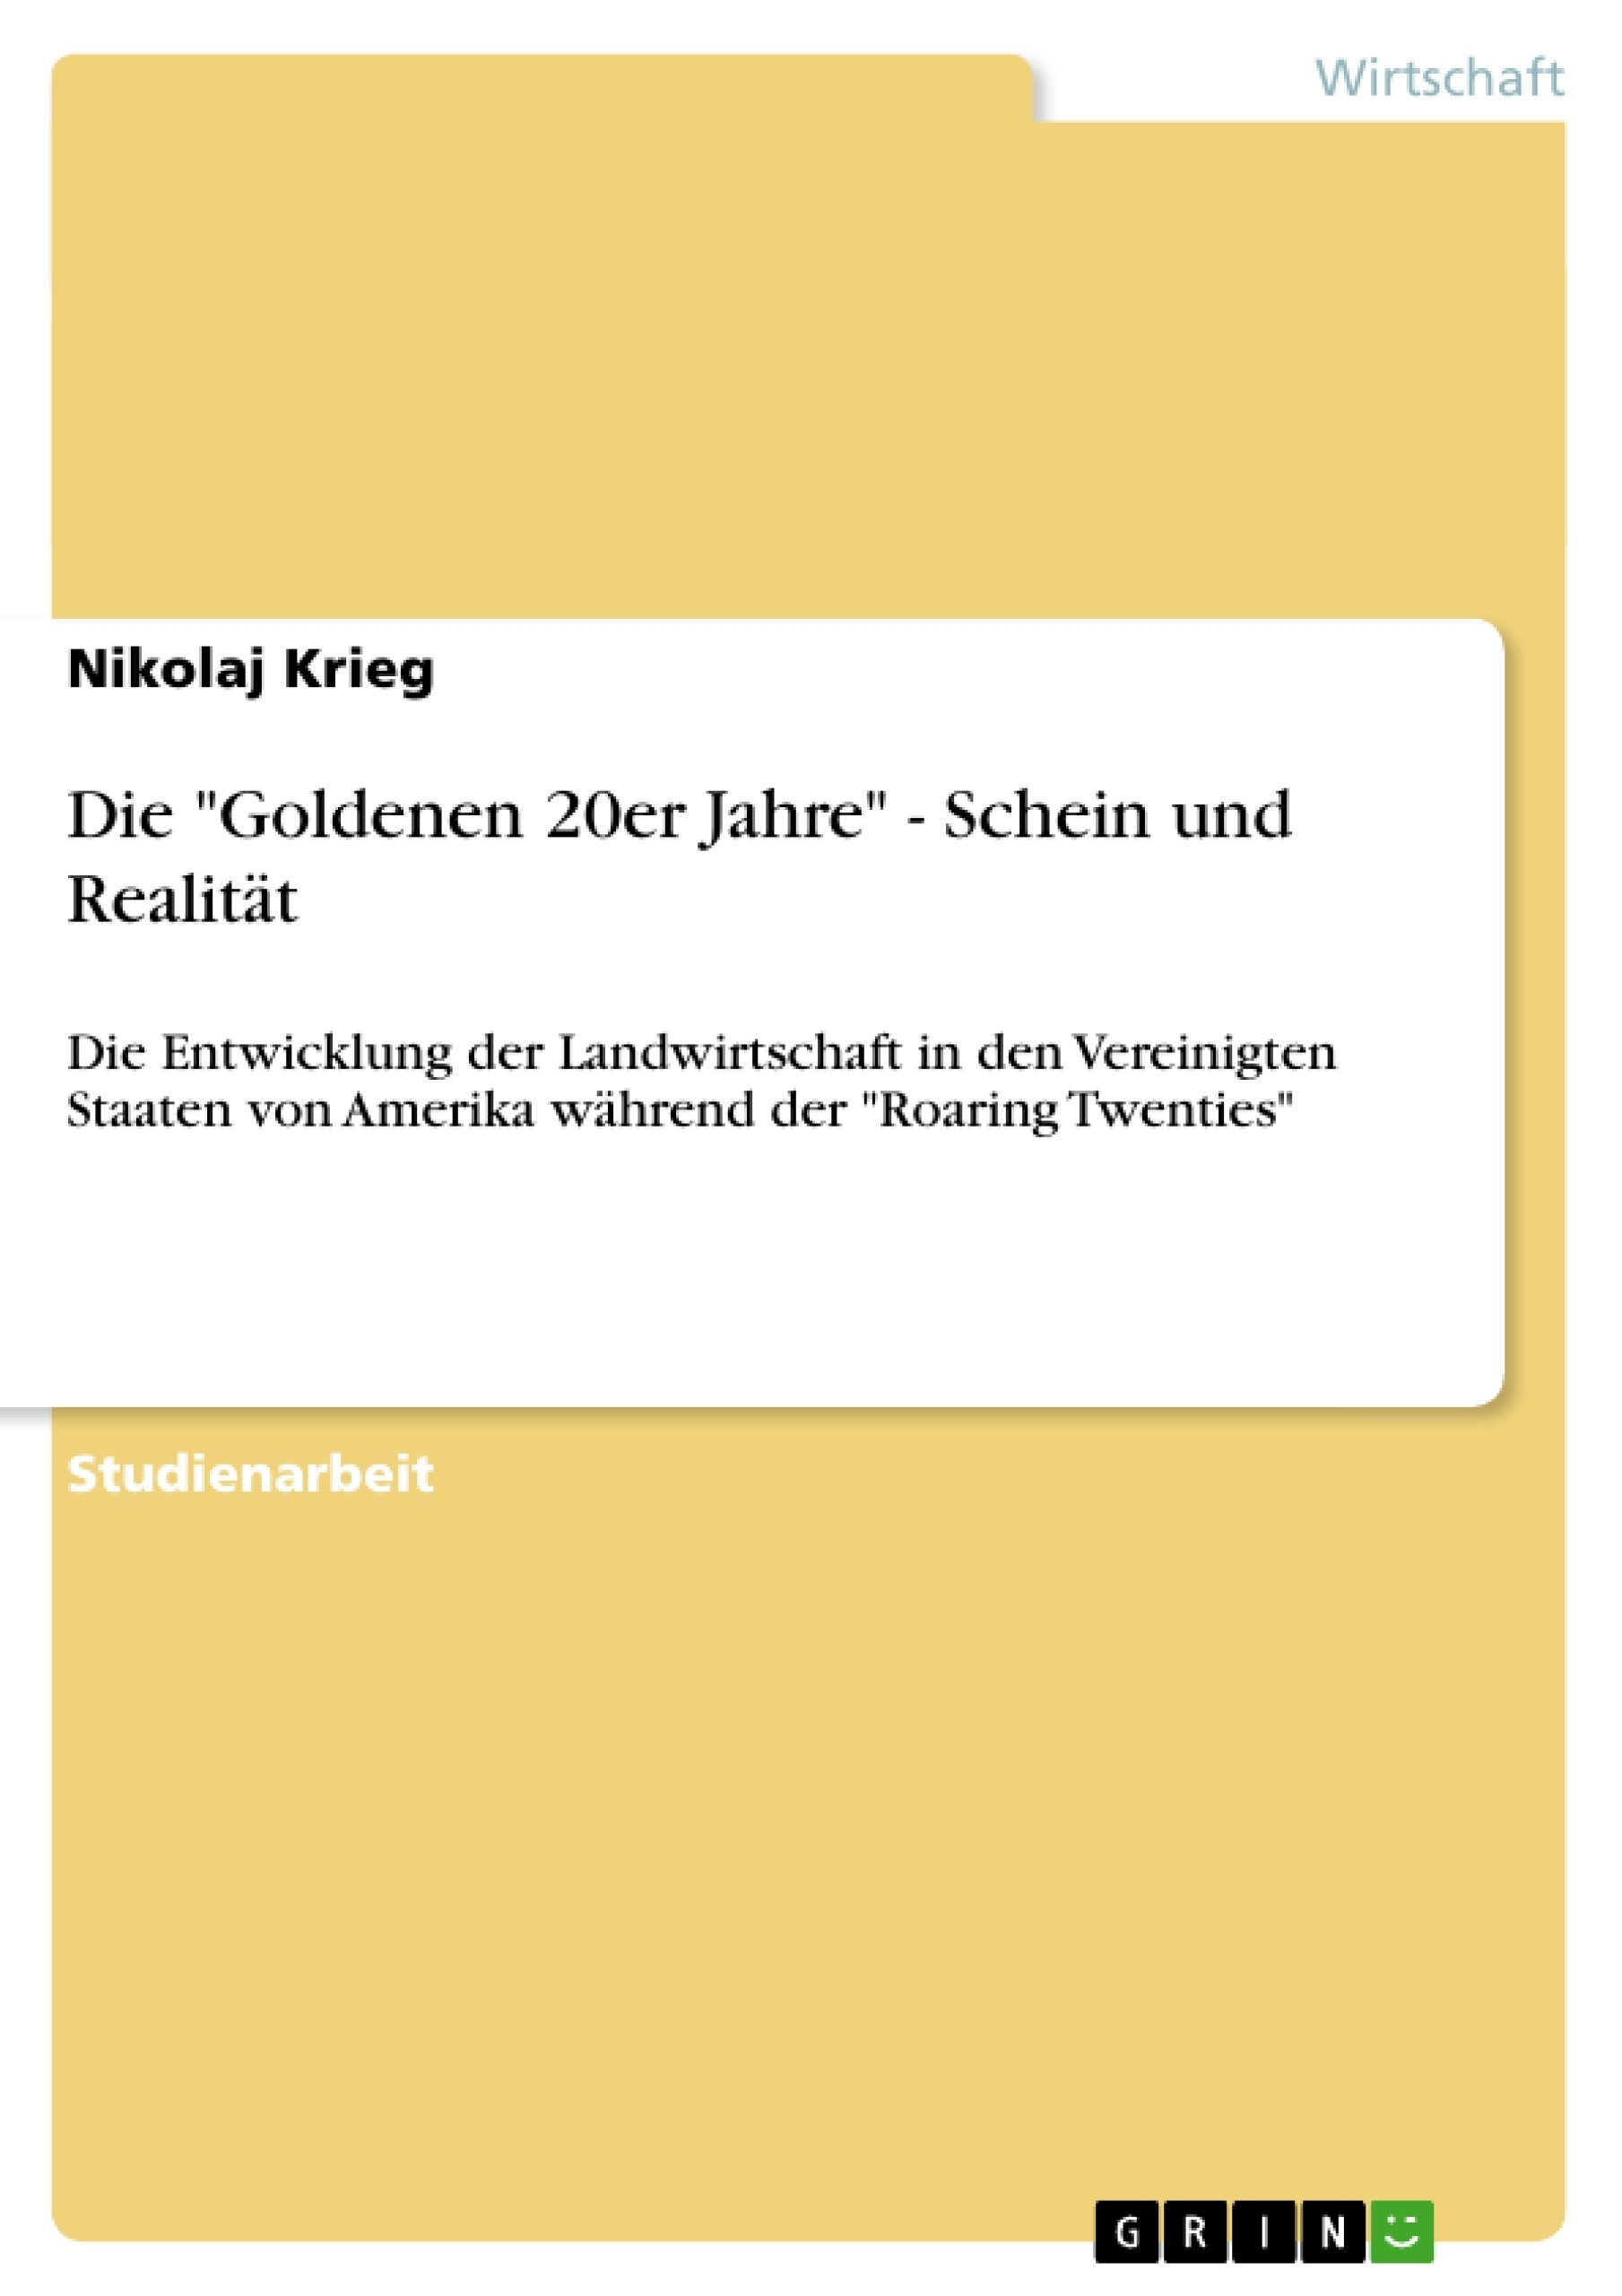 Title: Die "Goldenen 20er Jahre" - Schein und Realität